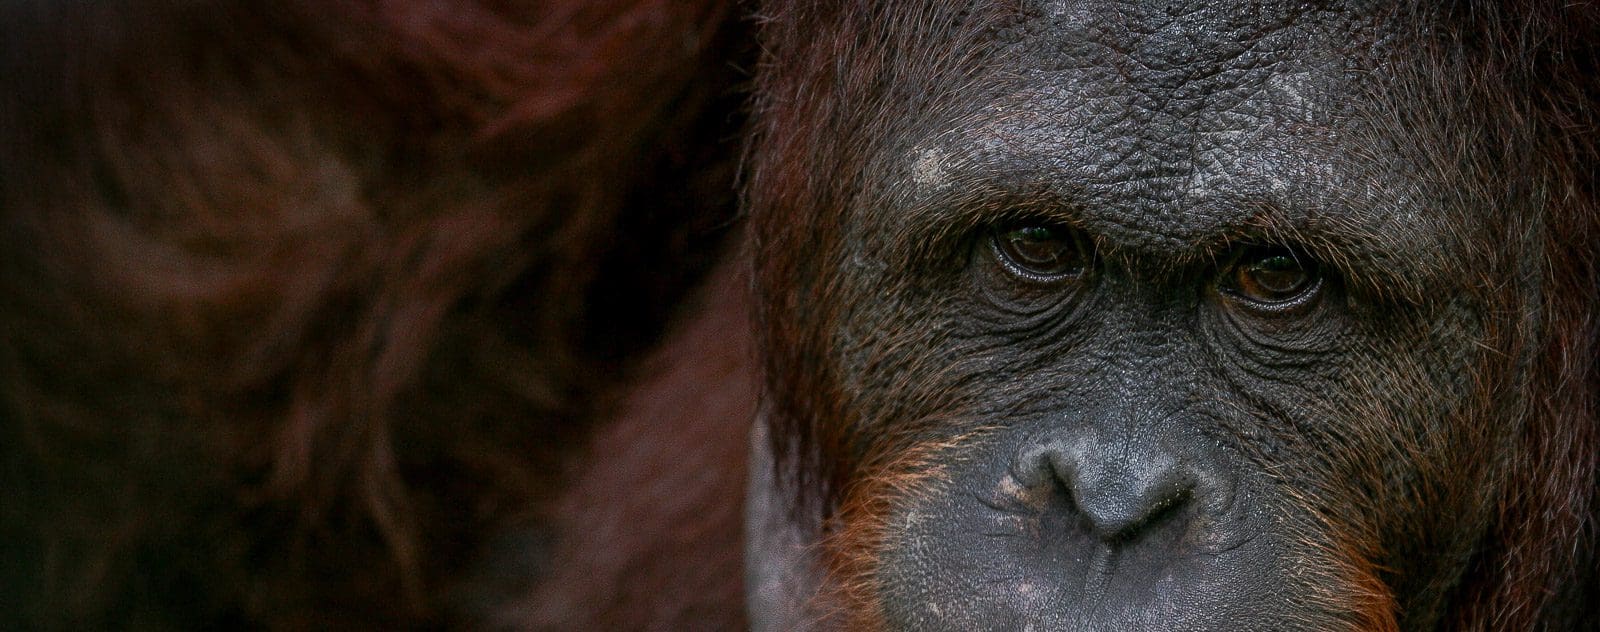 Orangutan at wildlife rescue centre in Sulawesi